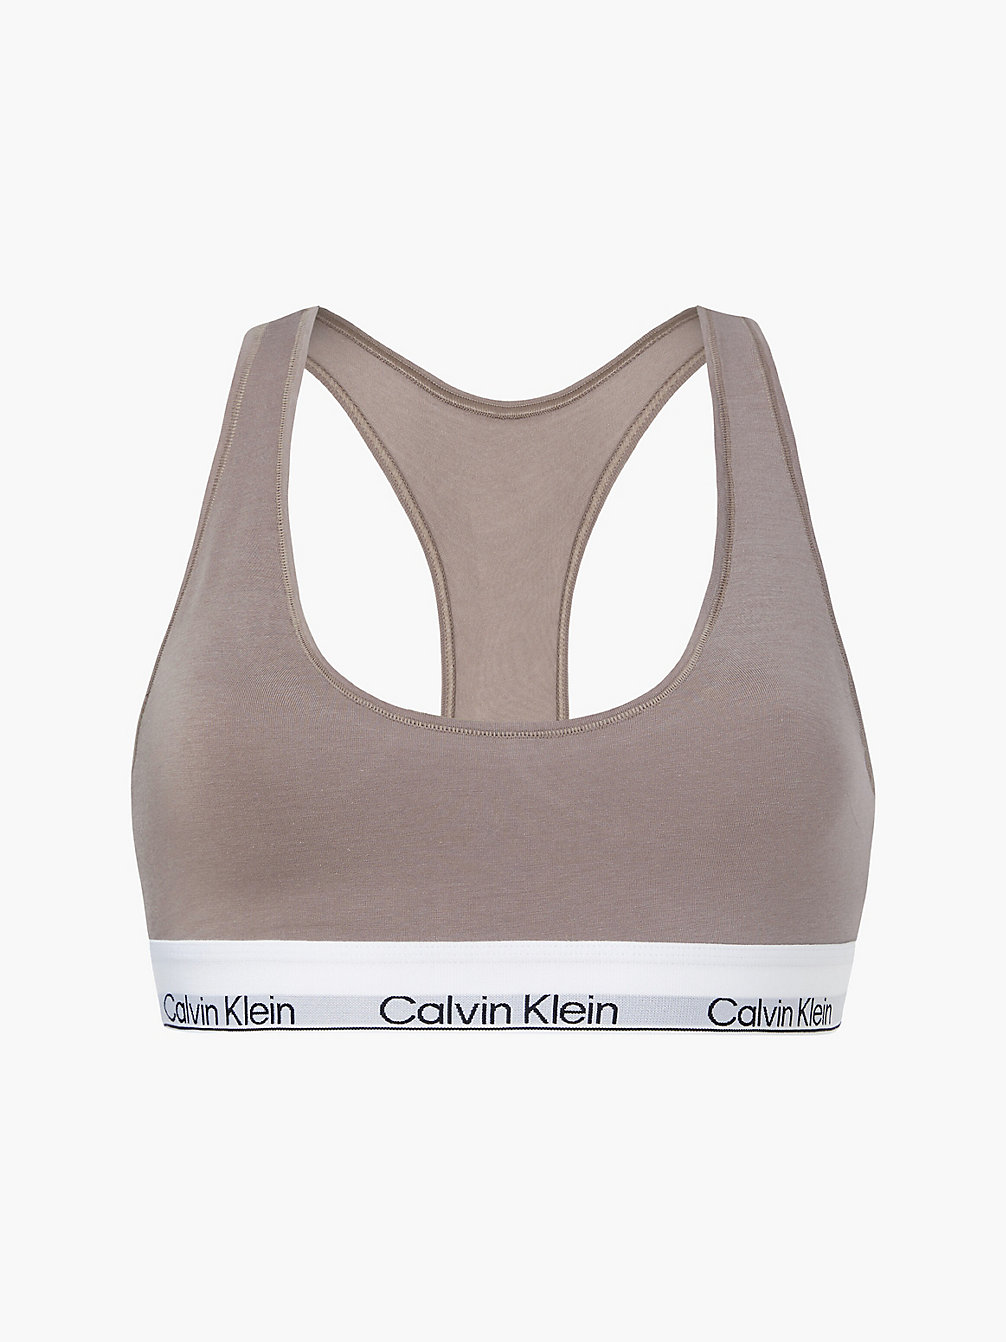 RICH TAUPE Bralette – Modern Cotton undefined Damen Calvin Klein